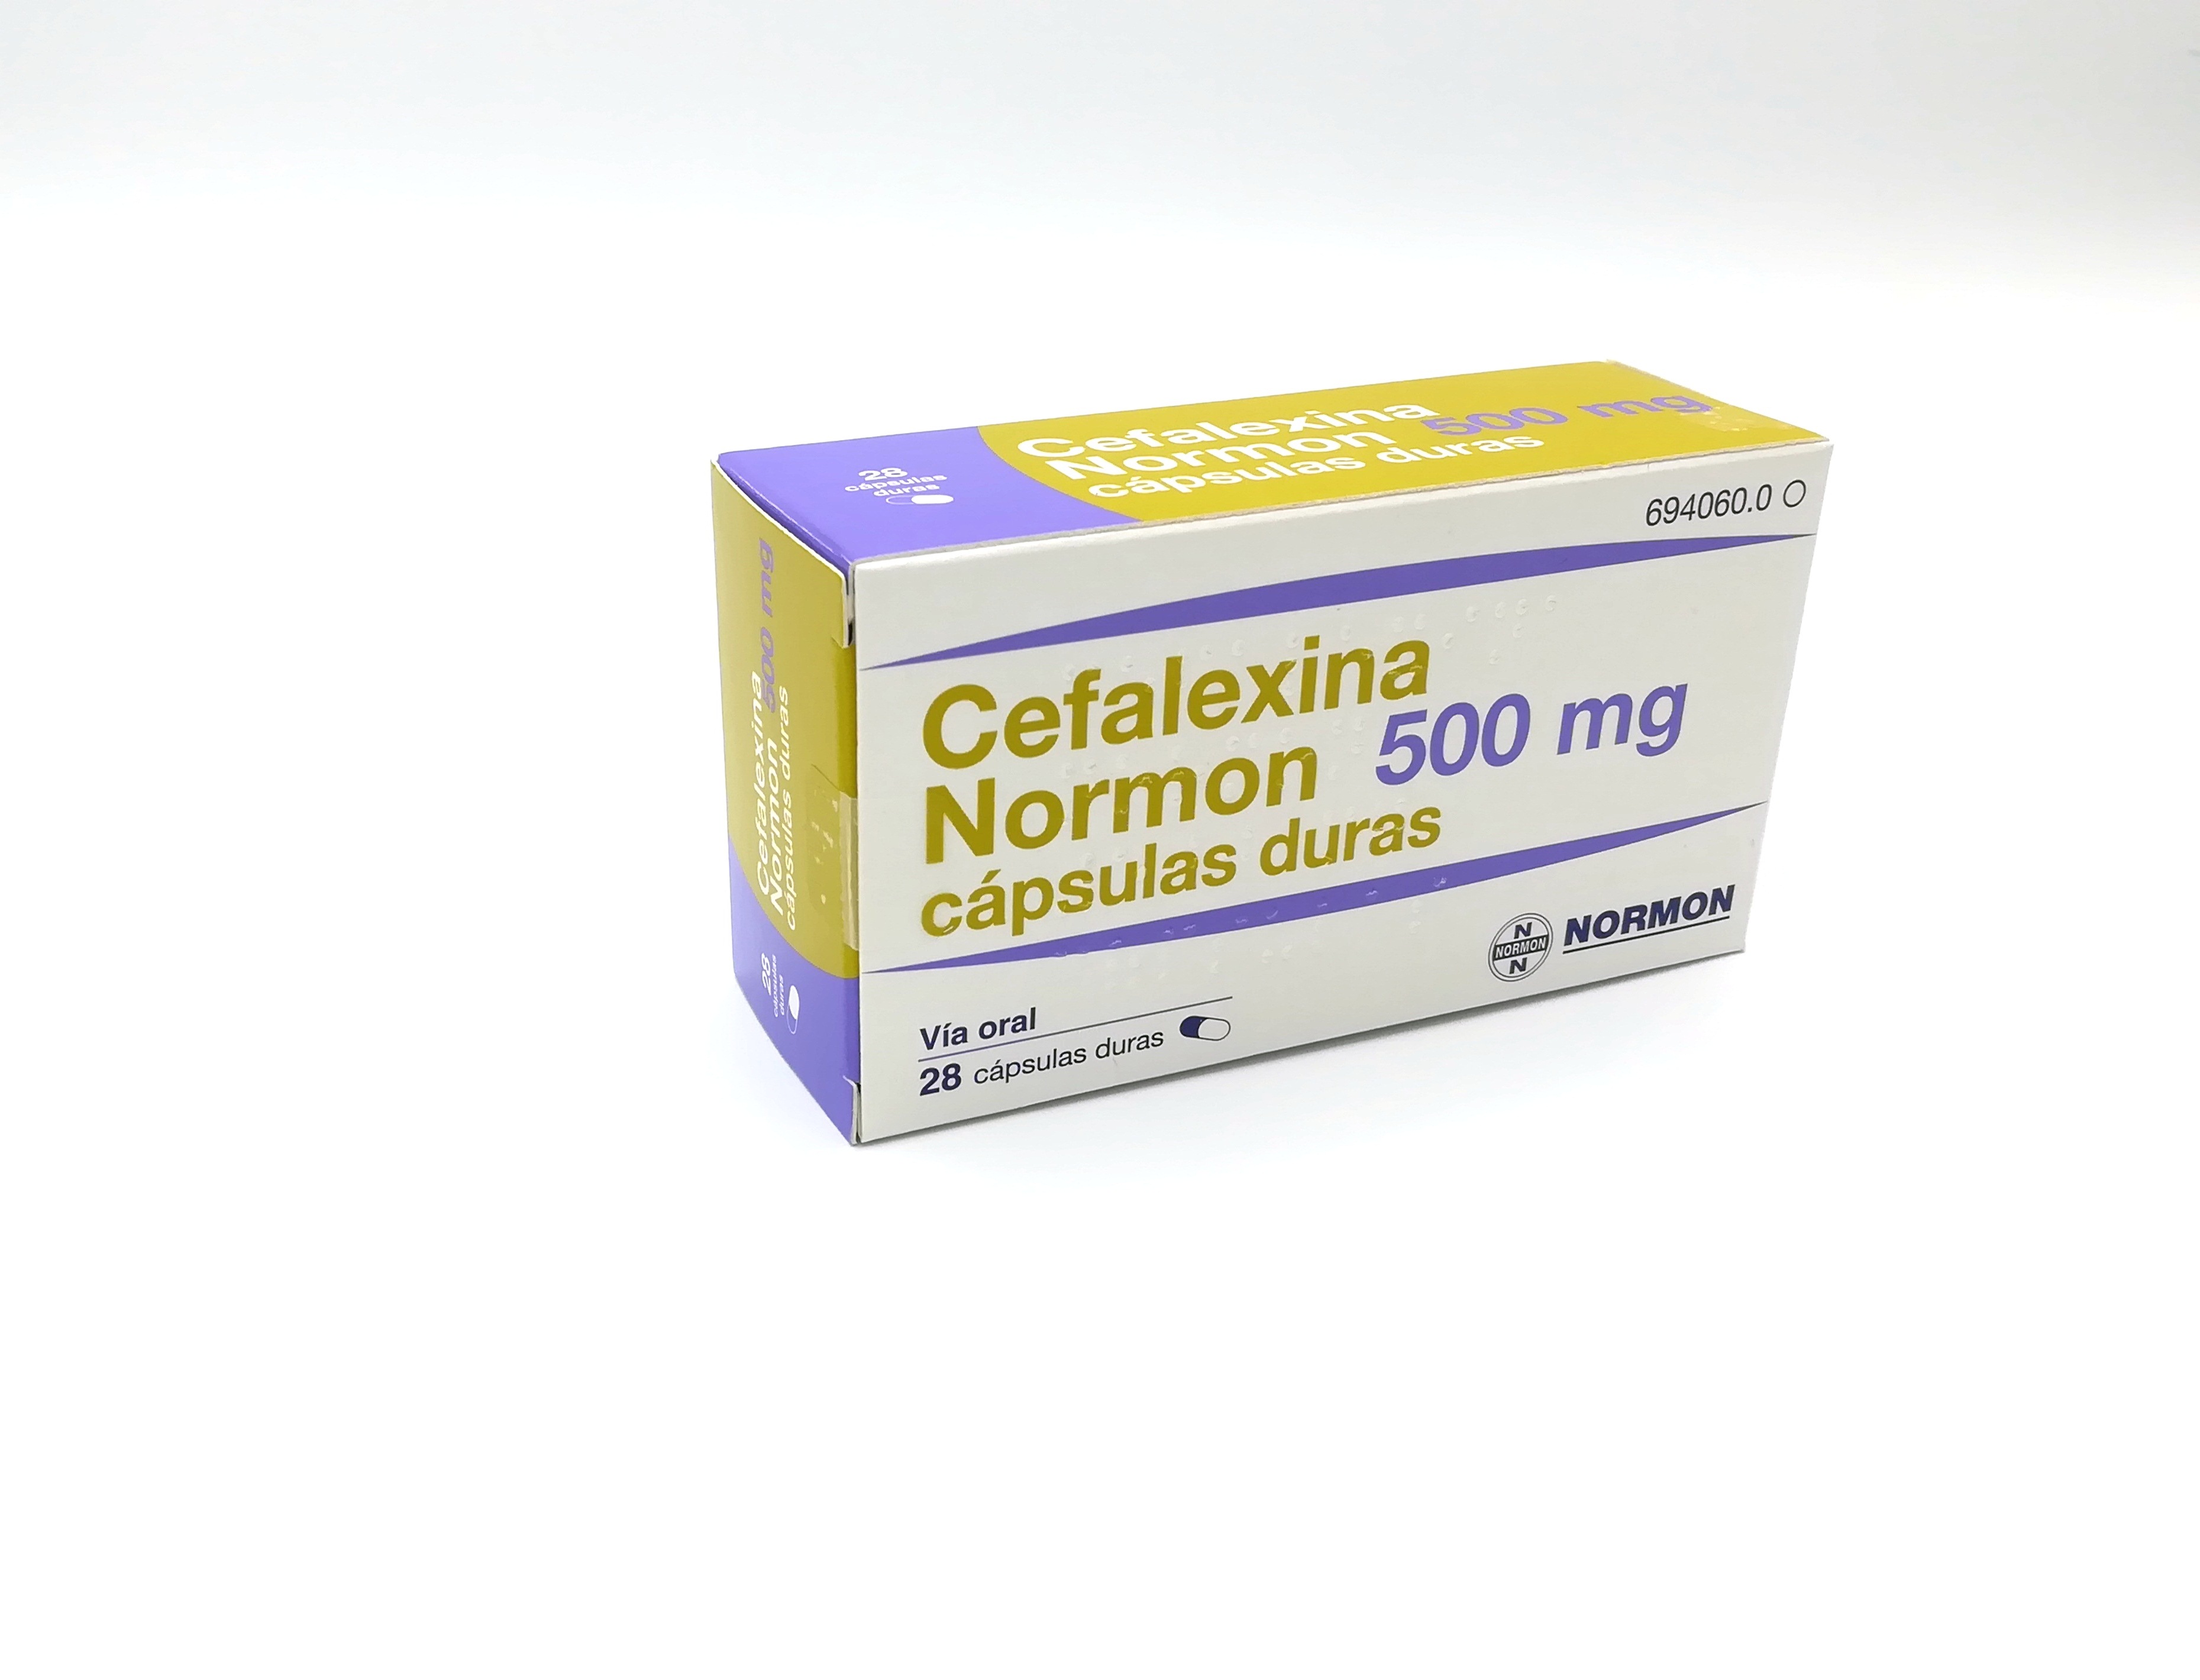 CEFALEXINA NORMON 500 mg 28 CAPSULAS